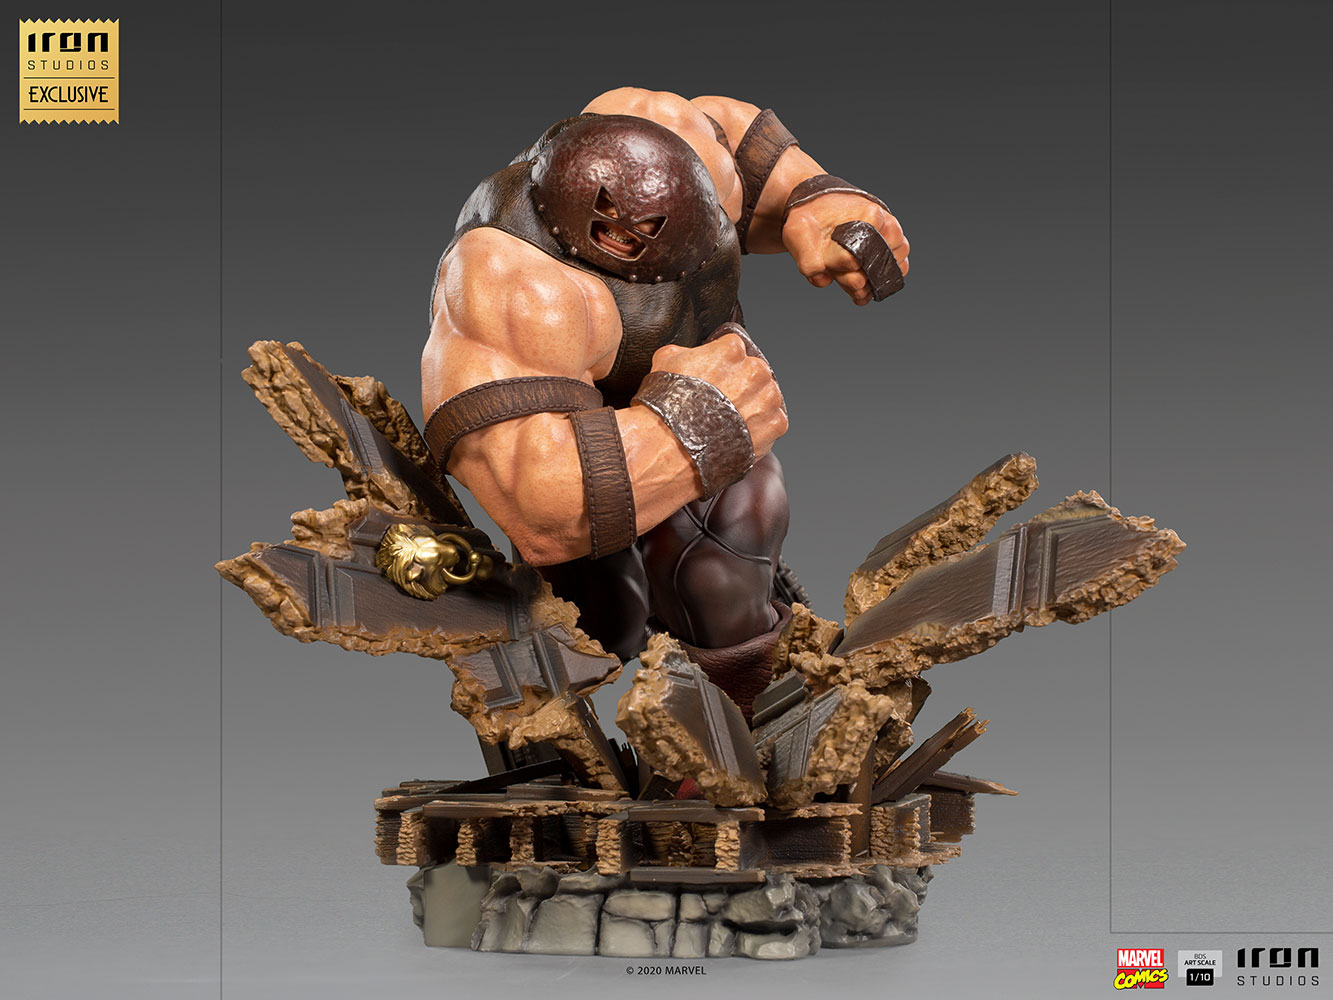 IRON STUDIOS : Juggernaut 1/10 Scale Statue Juggernaut-110-scale-statue-iron-studios_marvel_gallery_6081b4aac7fb1